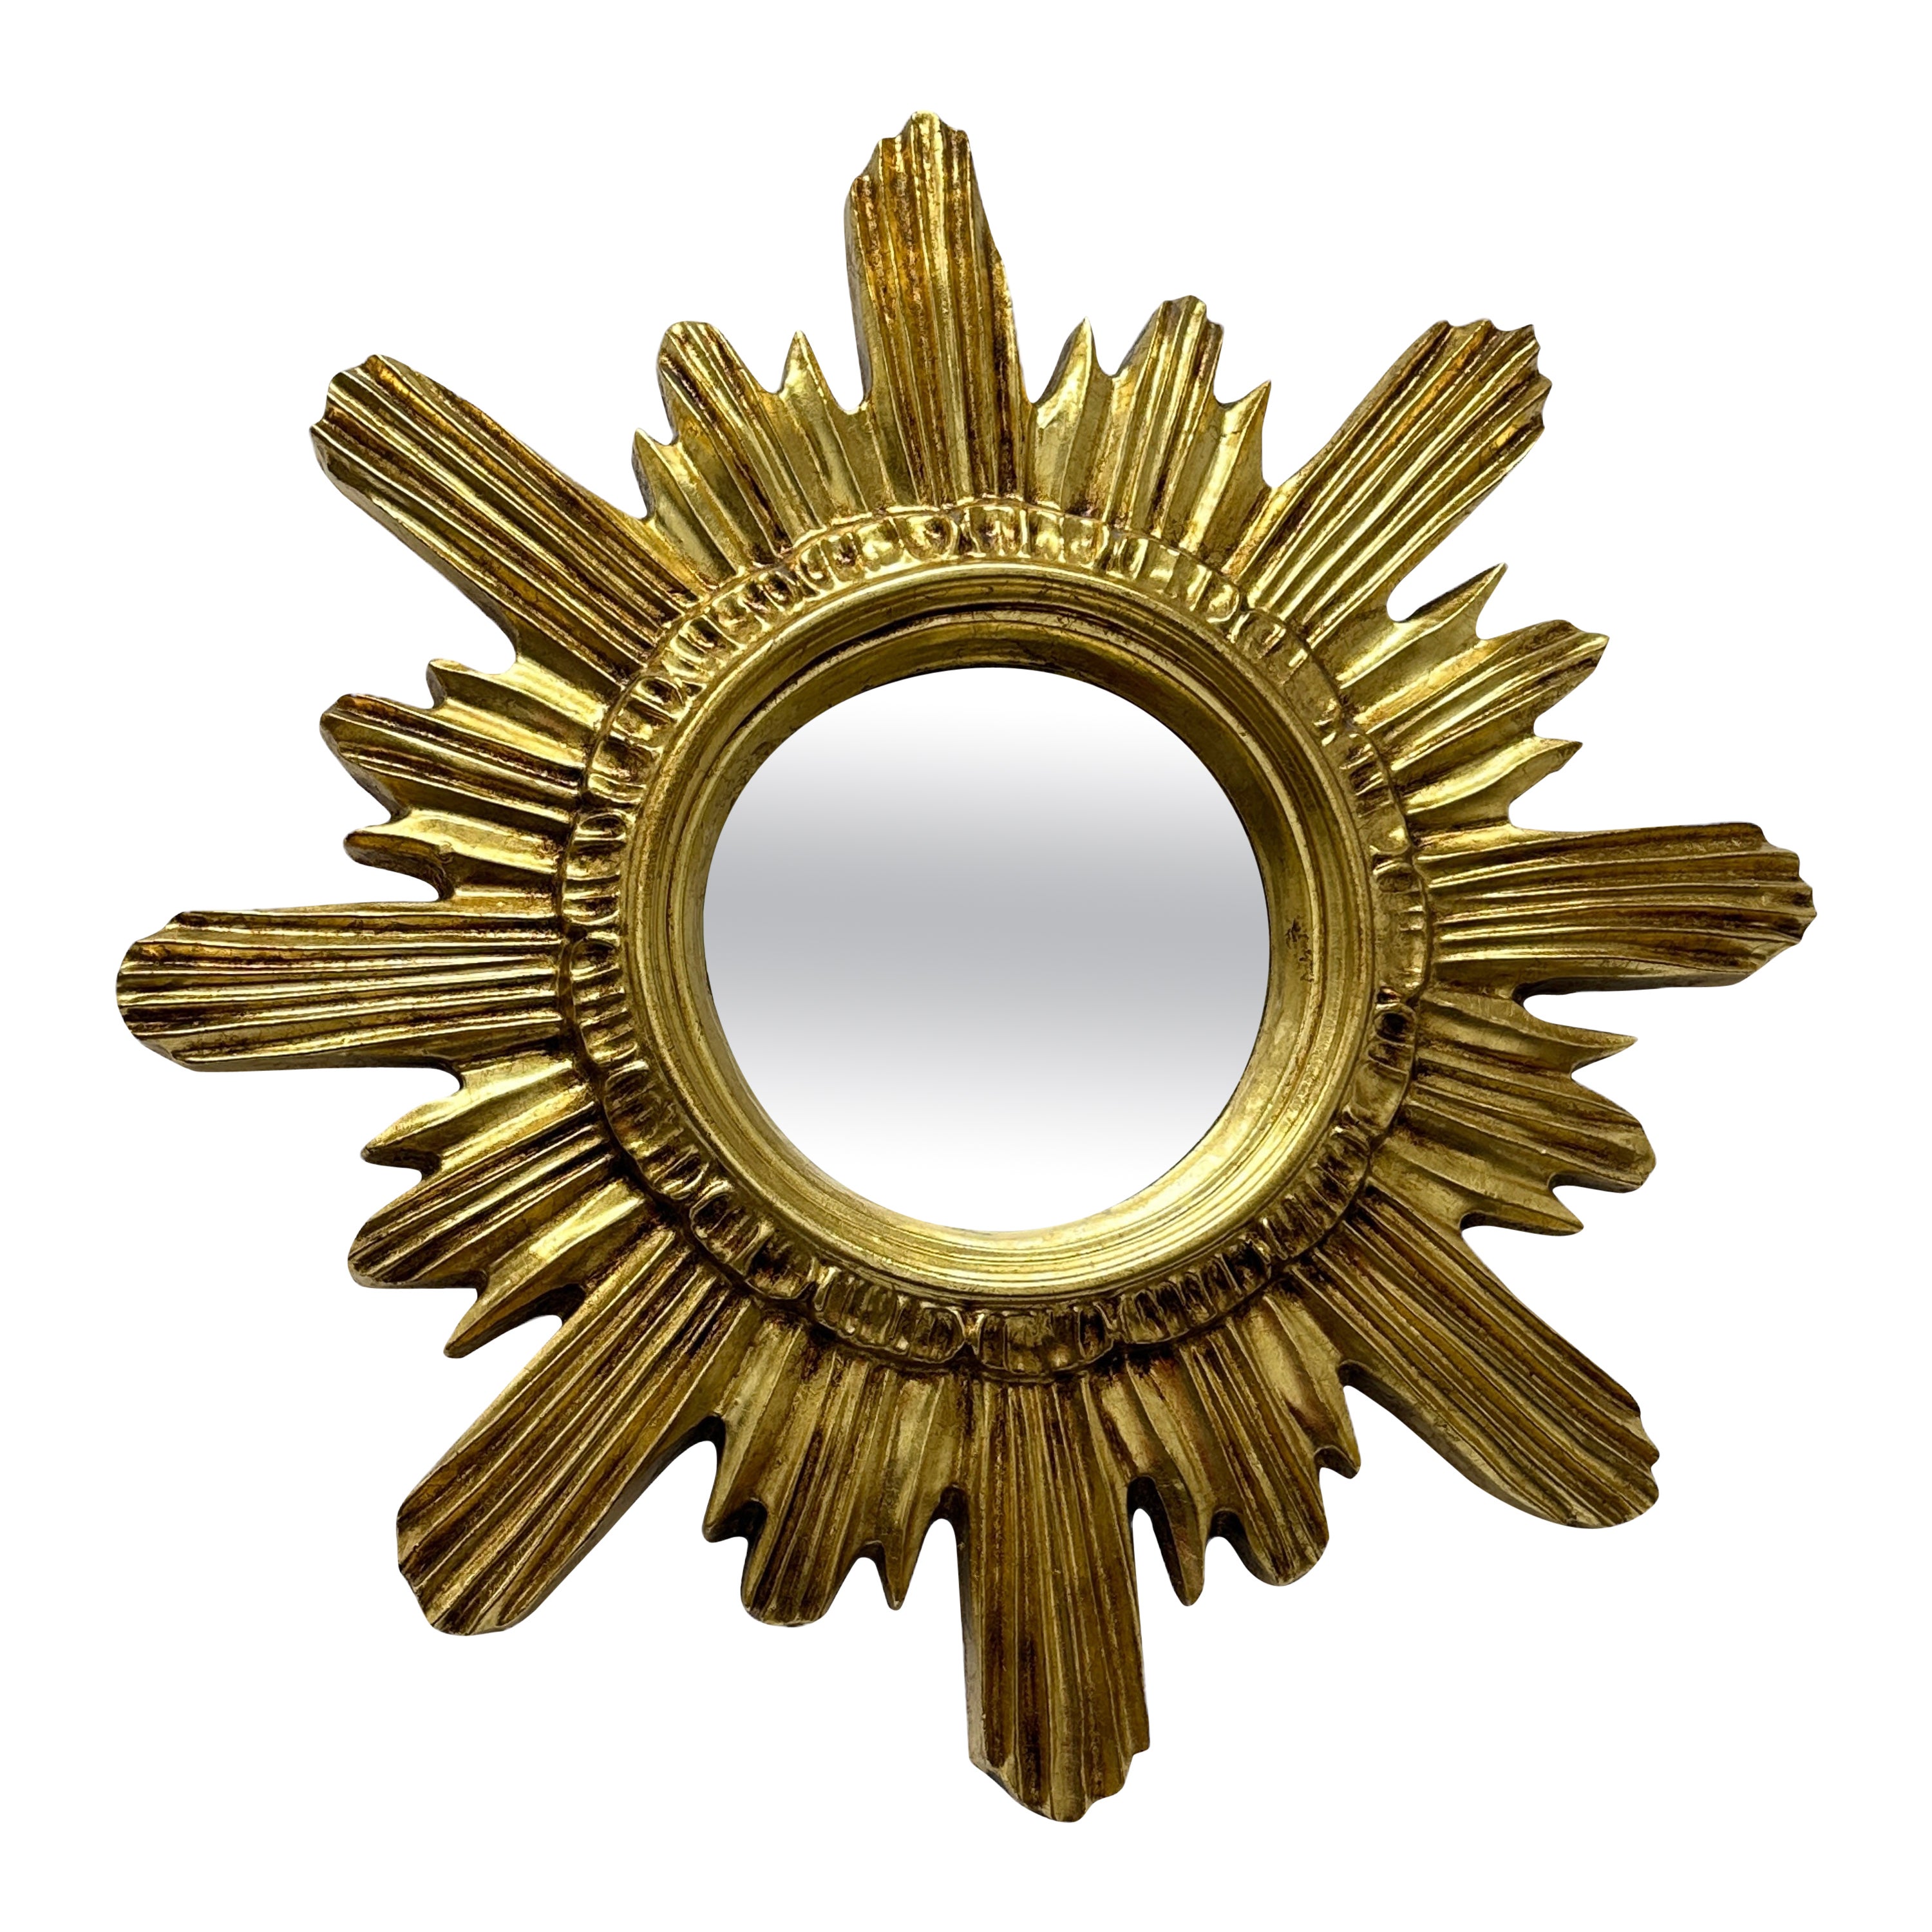 Magnifique miroir doré en forme d'étoile rayonnante, vers 1980, fabriqué en Belgique